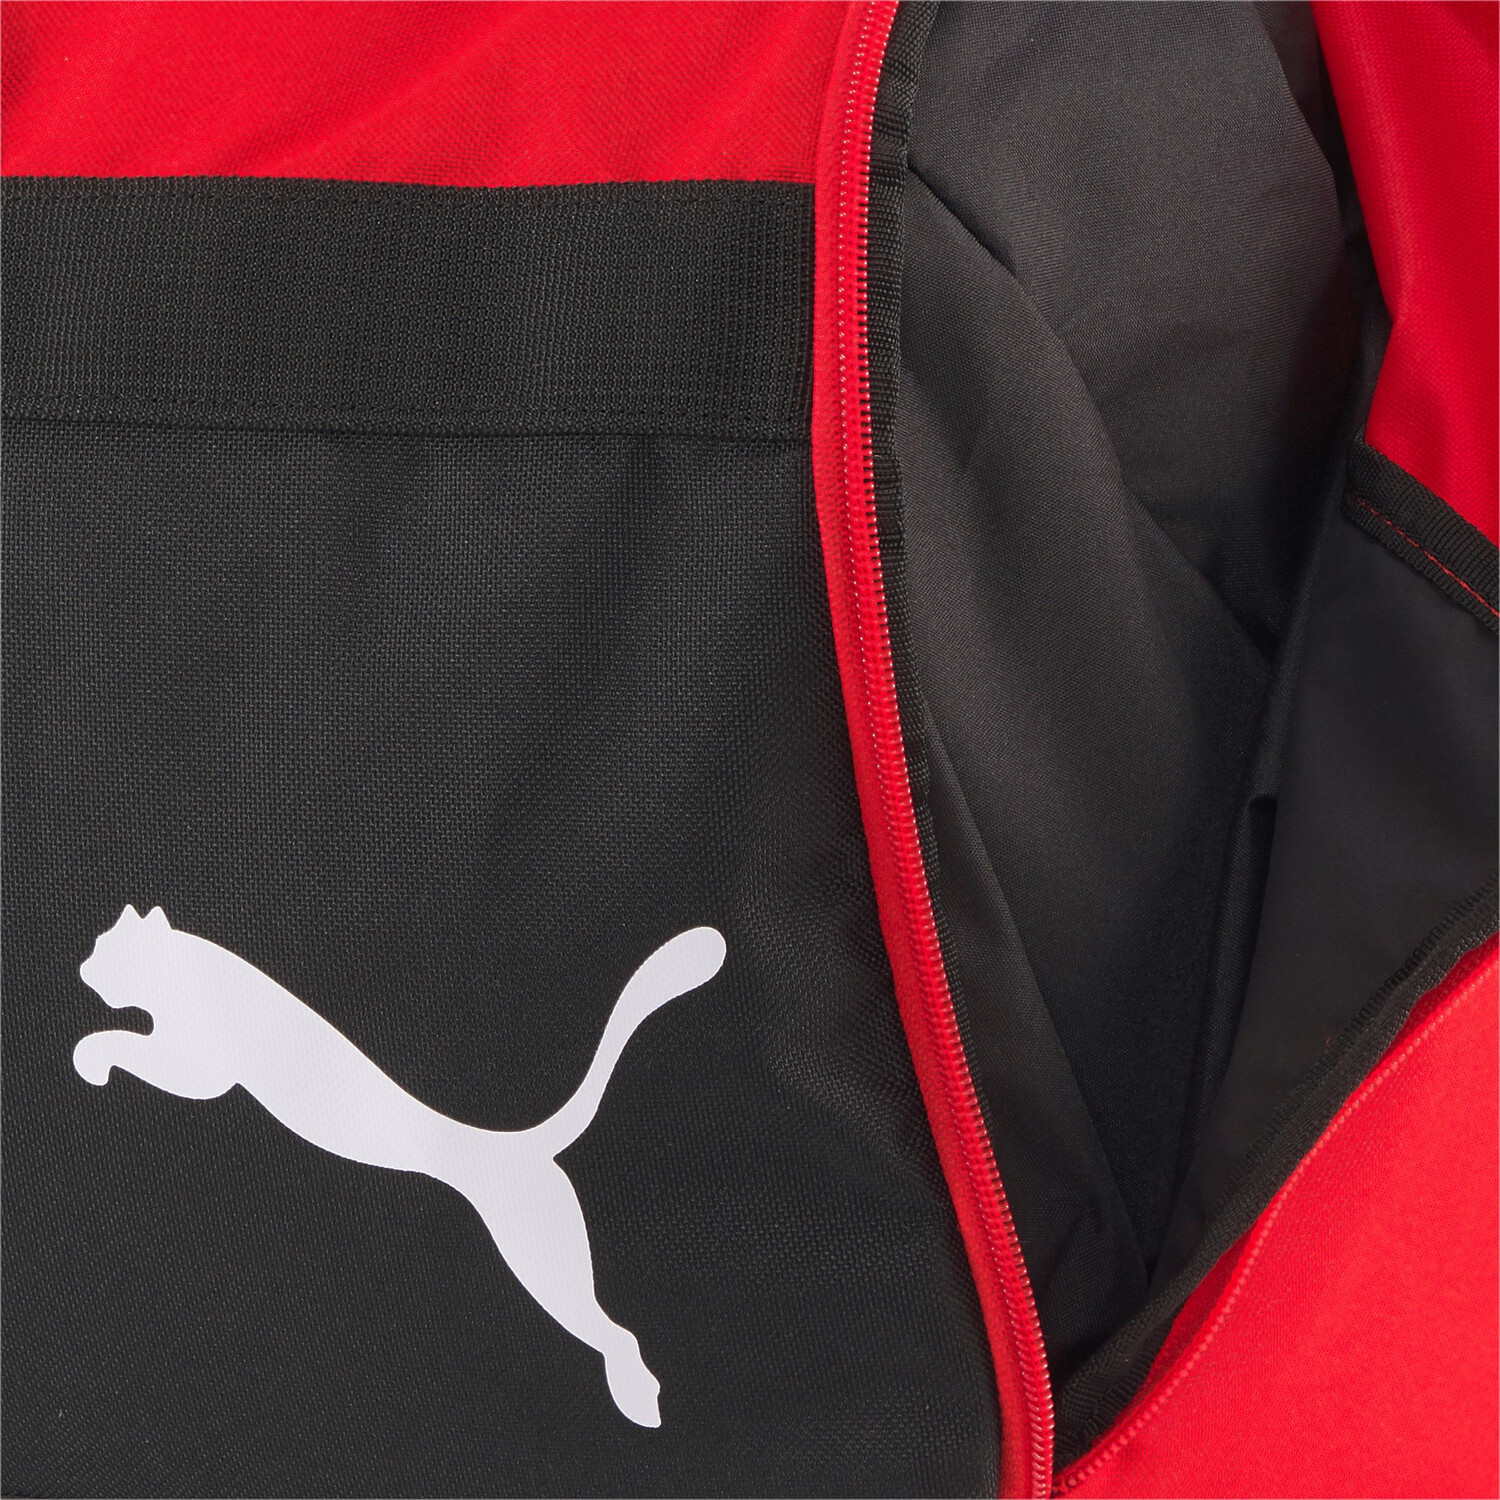 Sac de sport Puma Large rouge noir sur